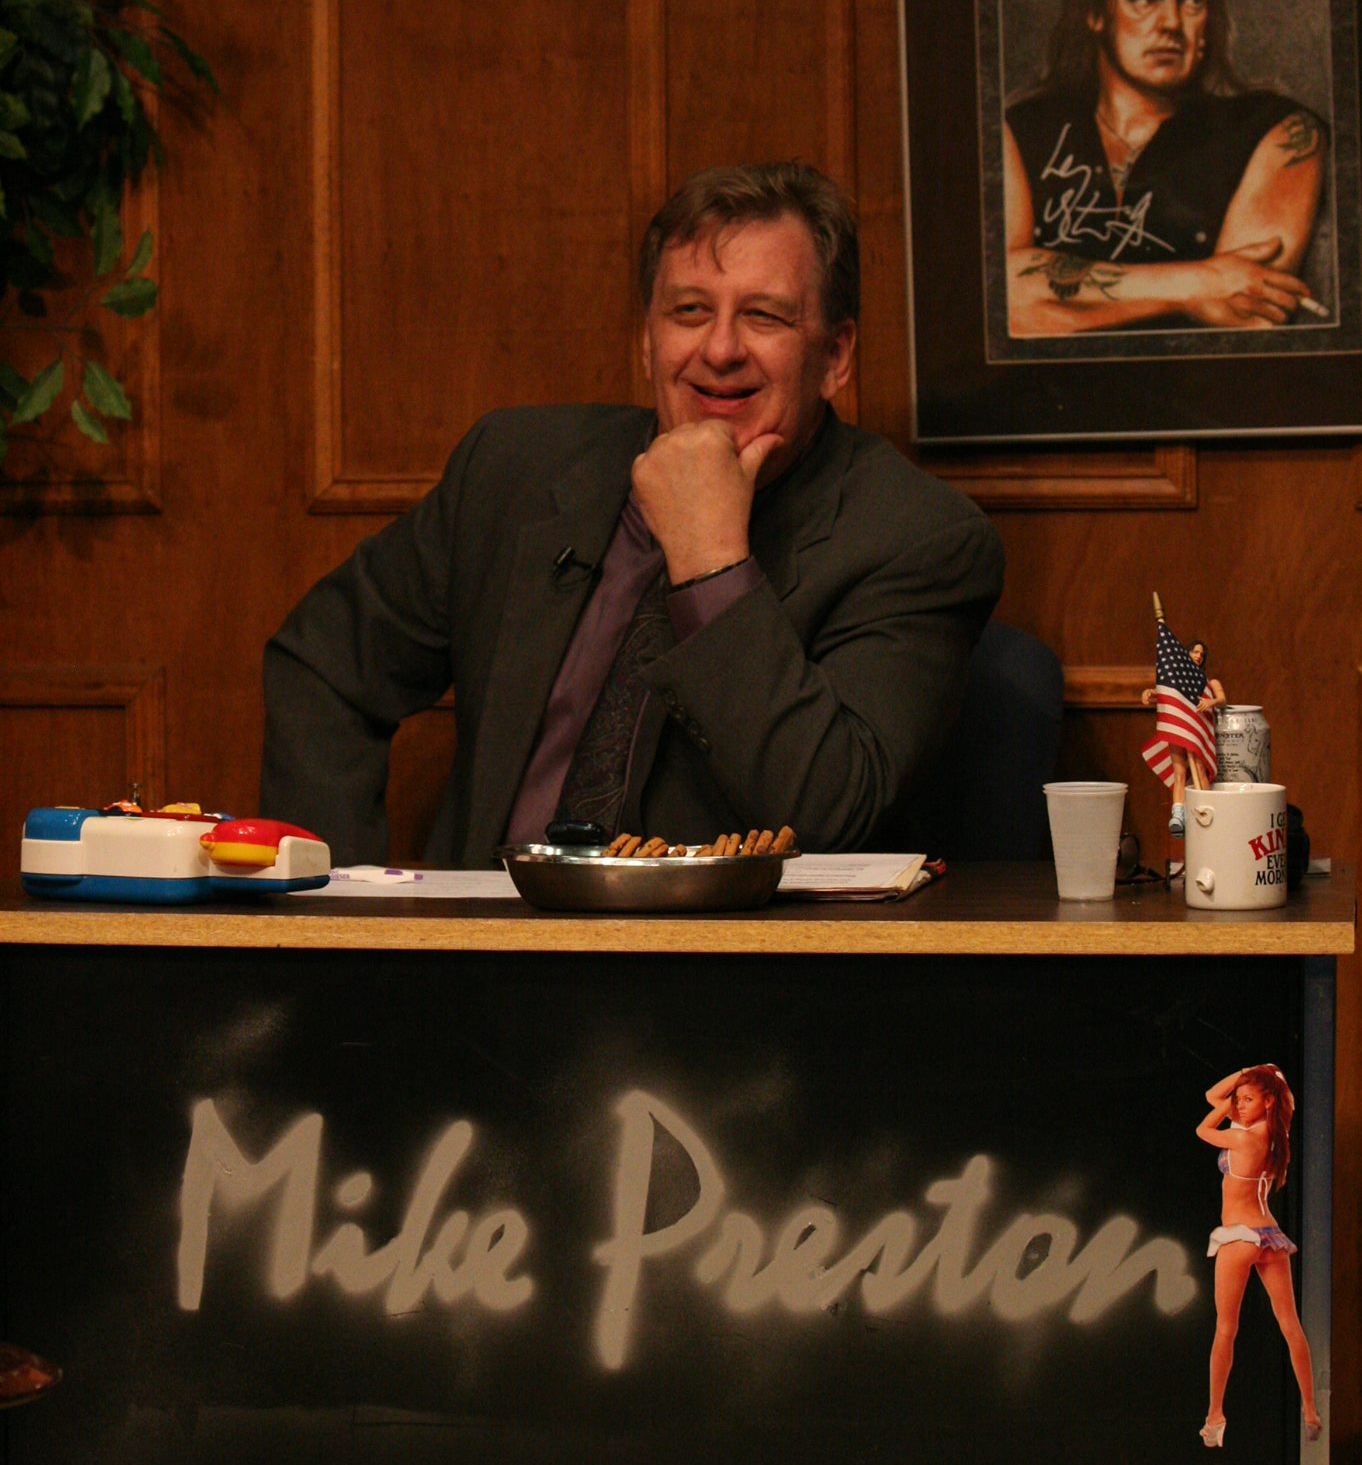 Mike Preston